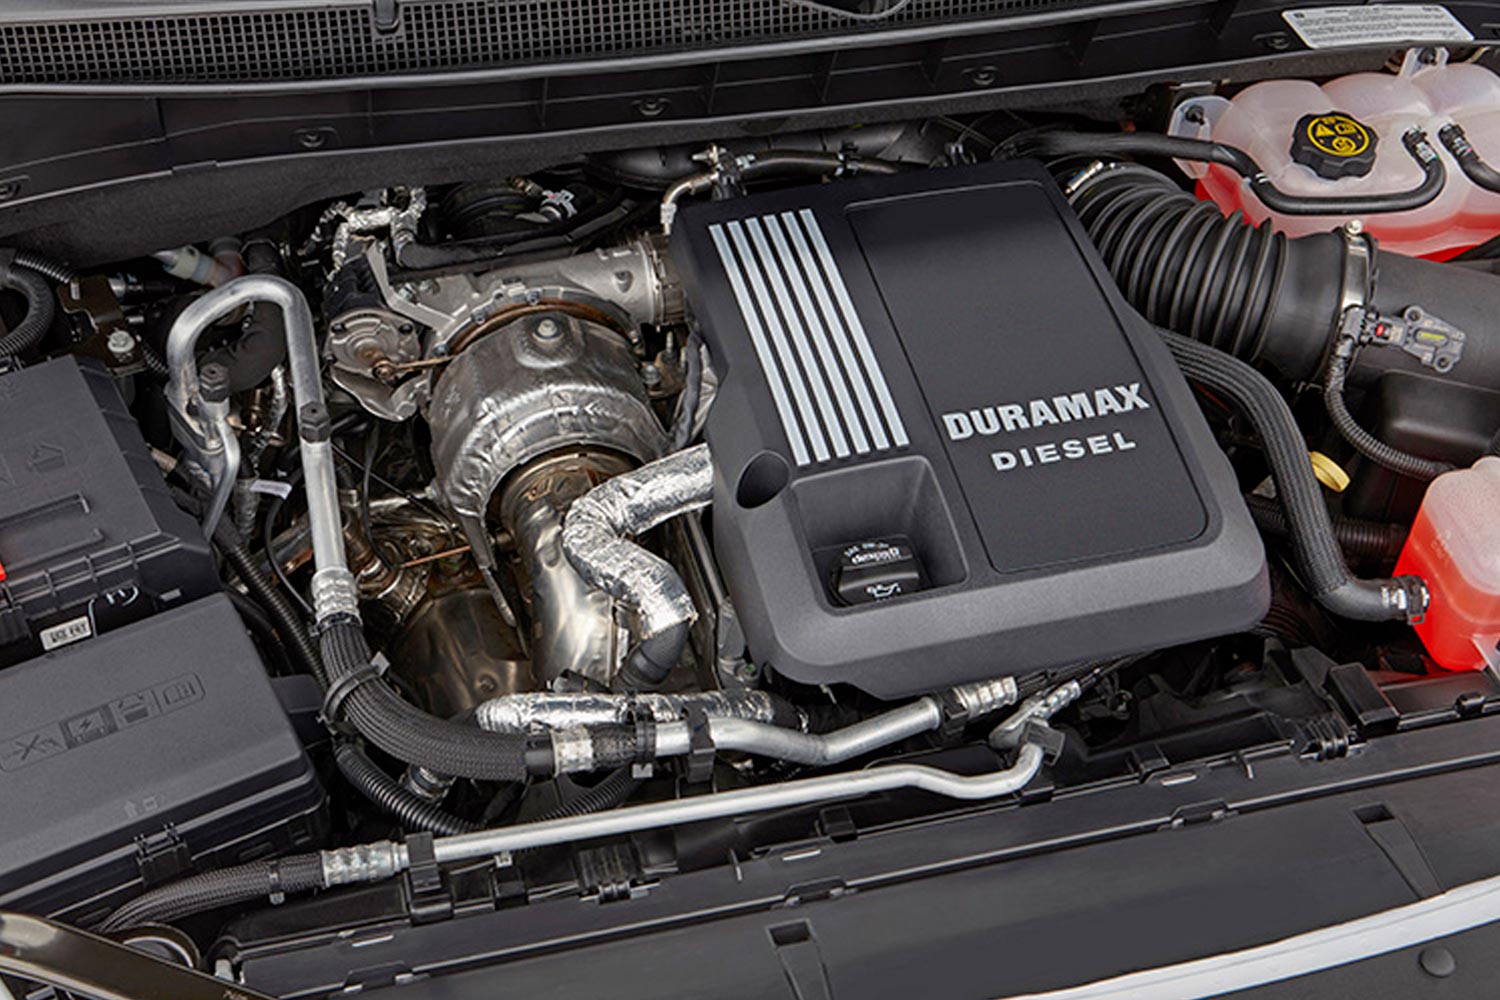 Duramax diesel engine